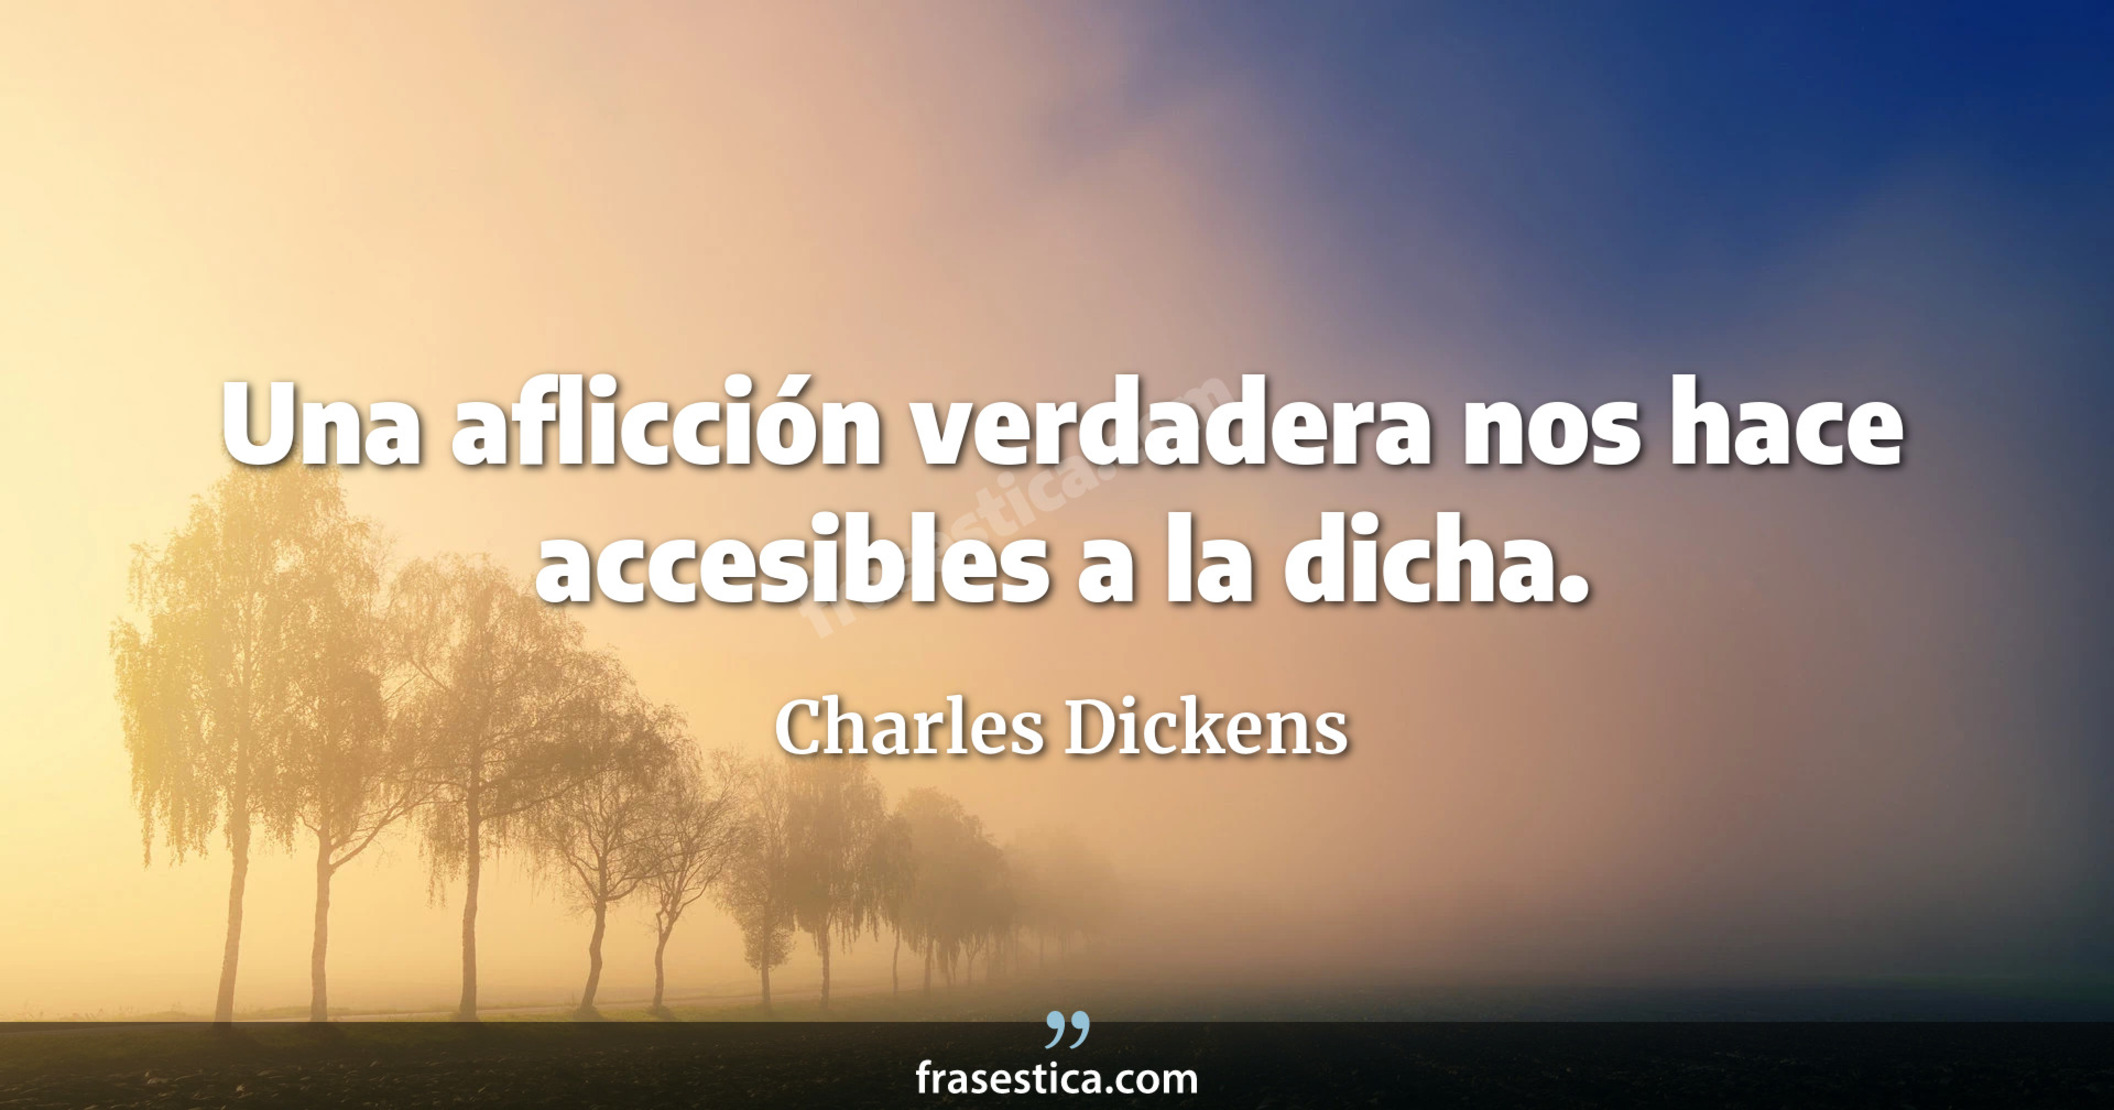 Una aflicción verdadera nos hace accesibles a la dicha. - Charles Dickens